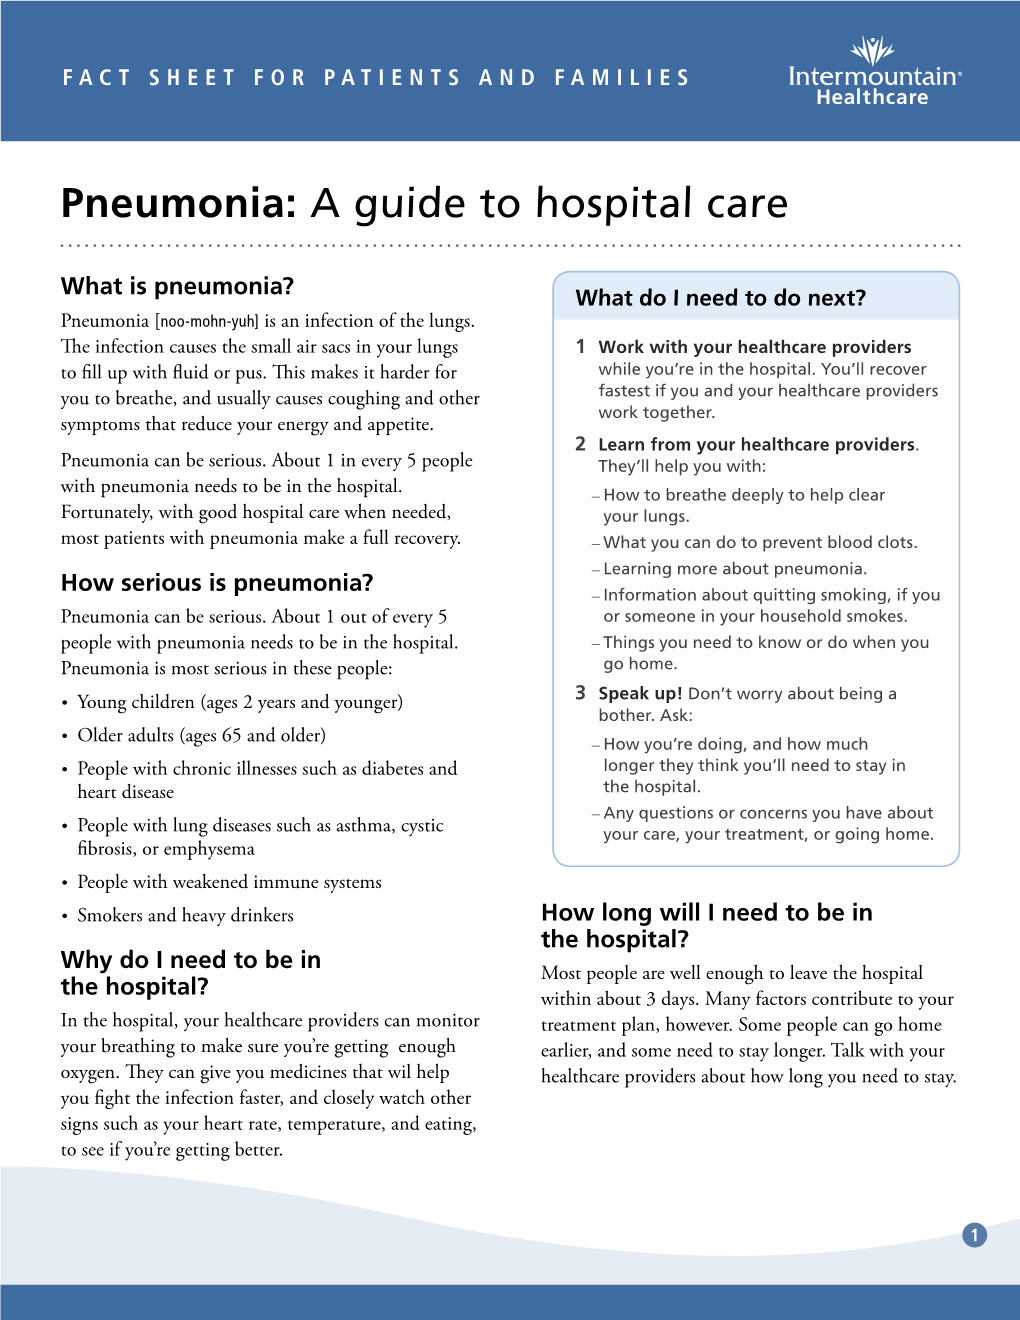 Pneumonia: a Guide to Hospital Care